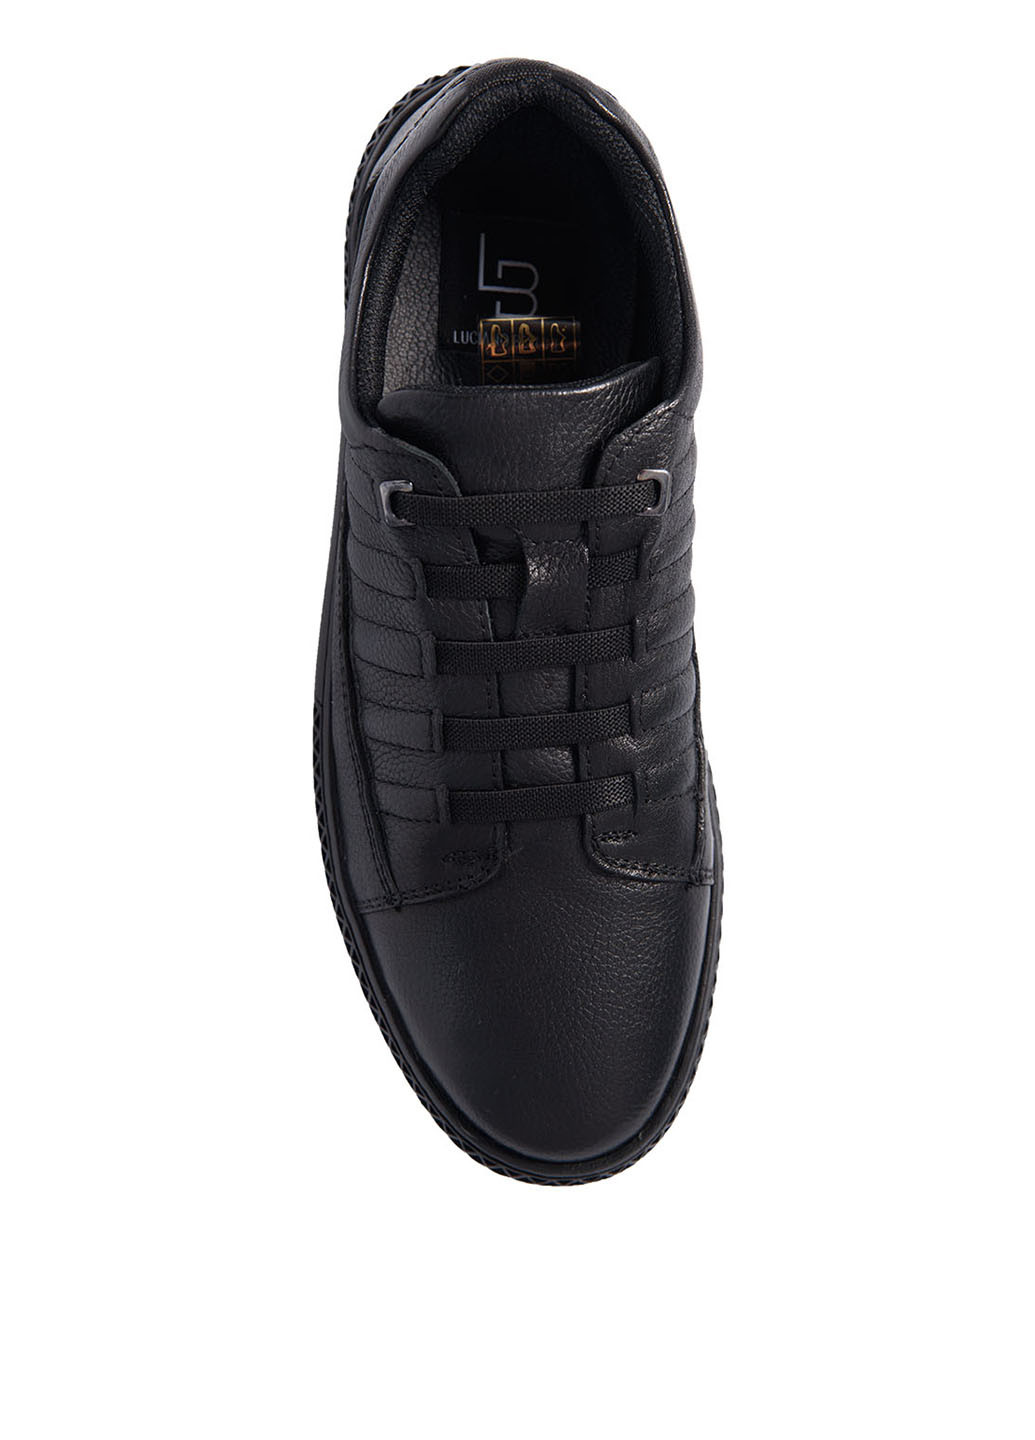 Черные спортивные туфли Luciano Bellini на шнурках